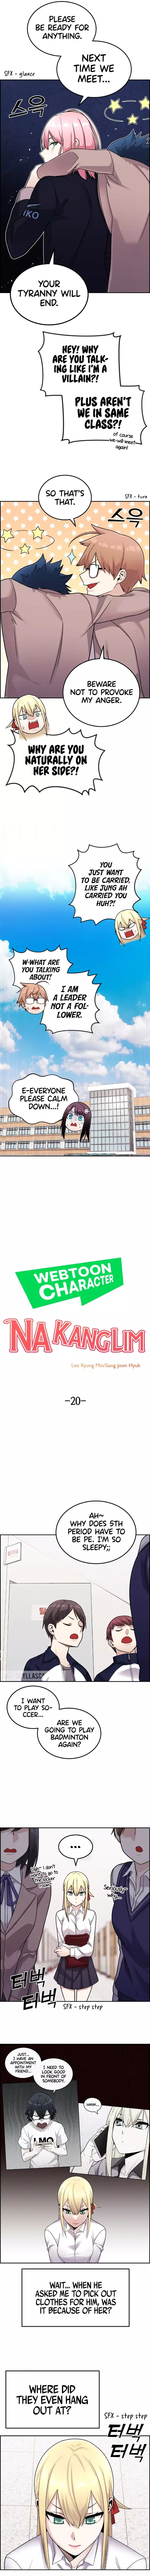 Webtoon Character Na Kang Lim - 20 page 4-5f0c2552